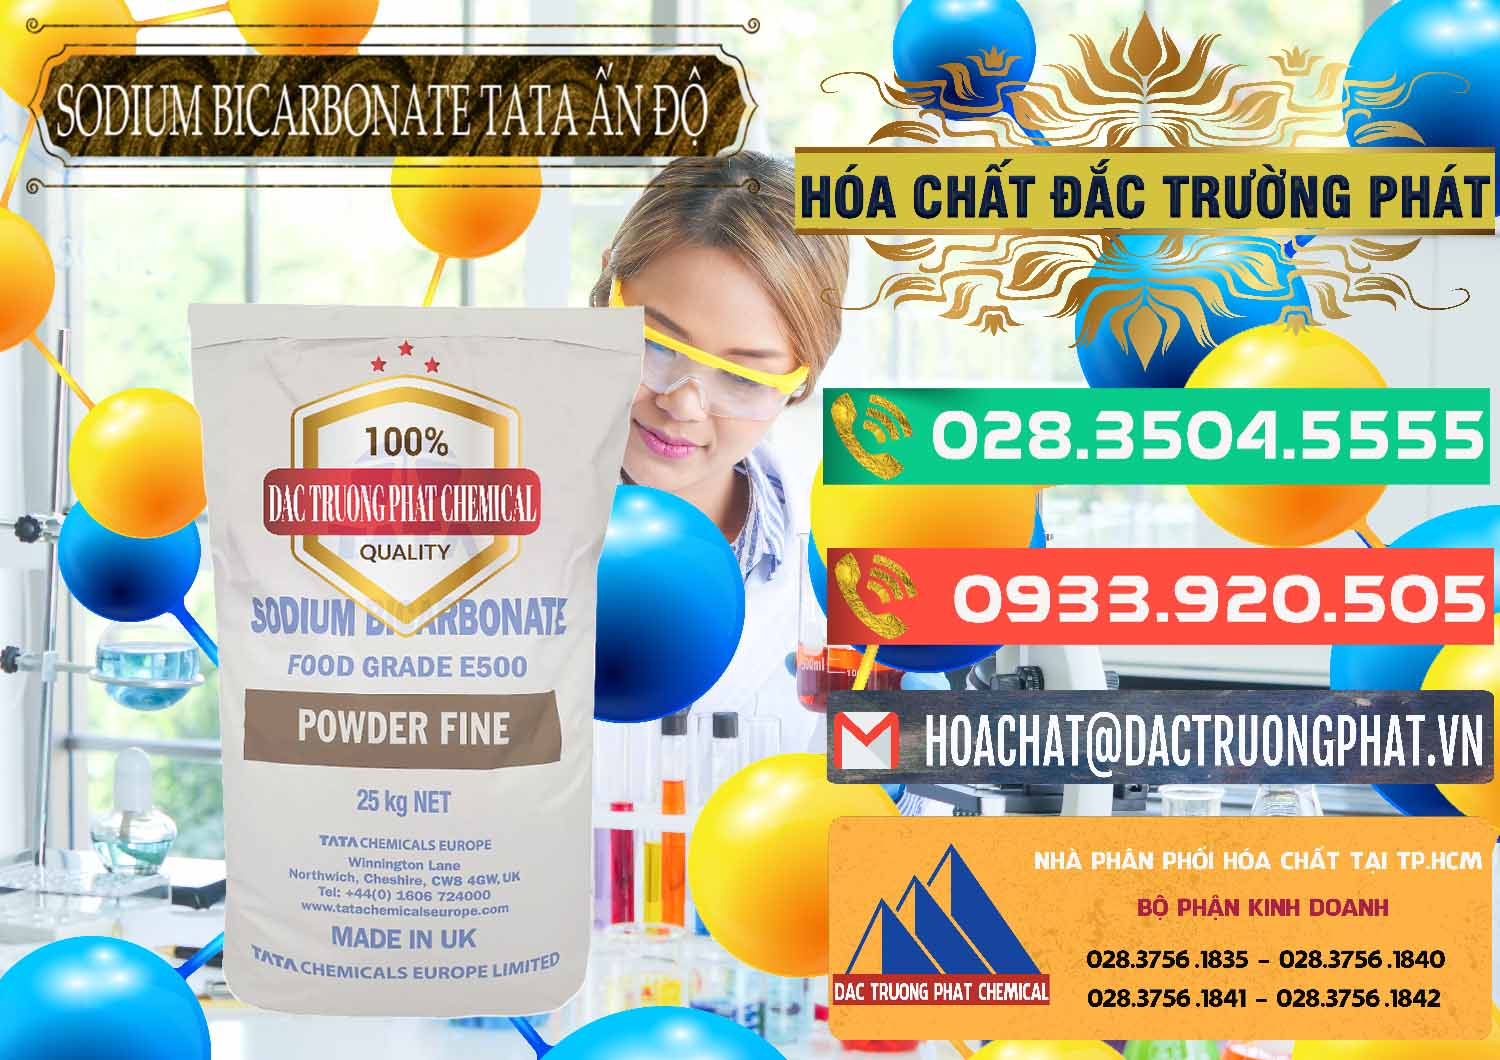 Chuyên bán - cung ứng Sodium Bicarbonate – Bicar NaHCO3 E500 Thực Phẩm Food Grade Tata Ấn Độ India - 0261 - Công ty chuyên phân phối và bán hóa chất tại TP.HCM - congtyhoachat.com.vn